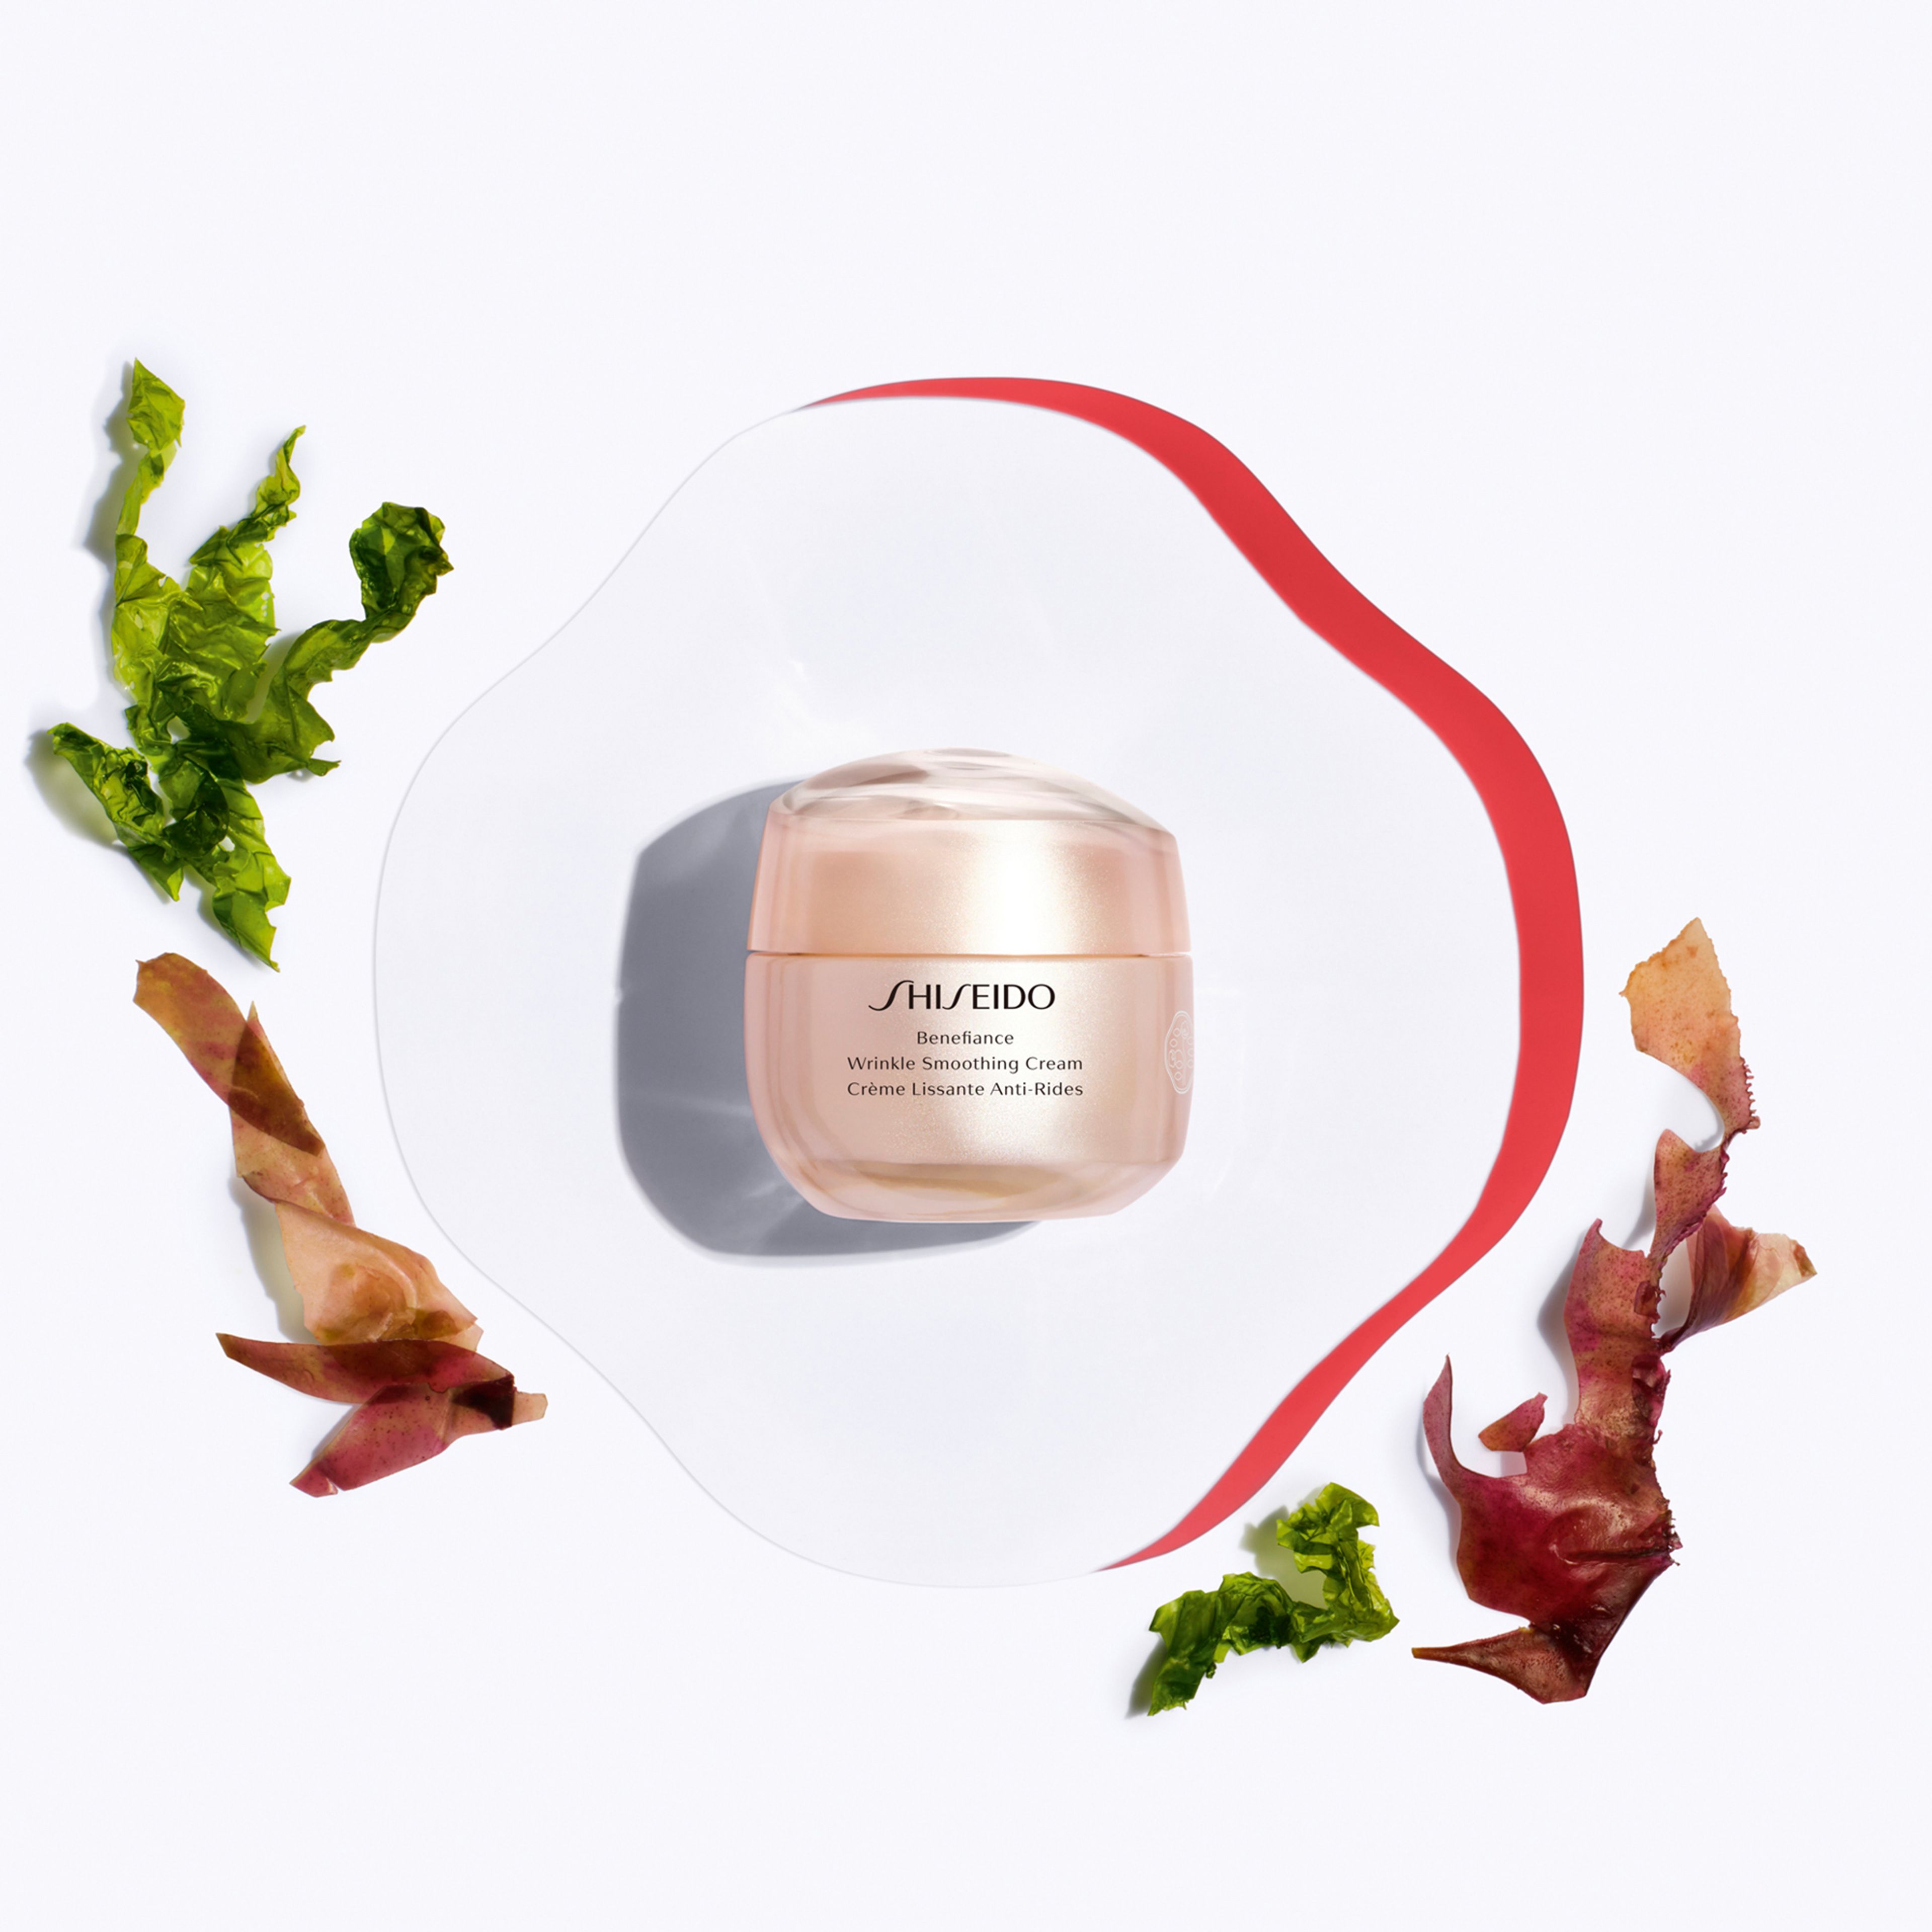 Shiseido Wrinkle Smoothing Cream 4